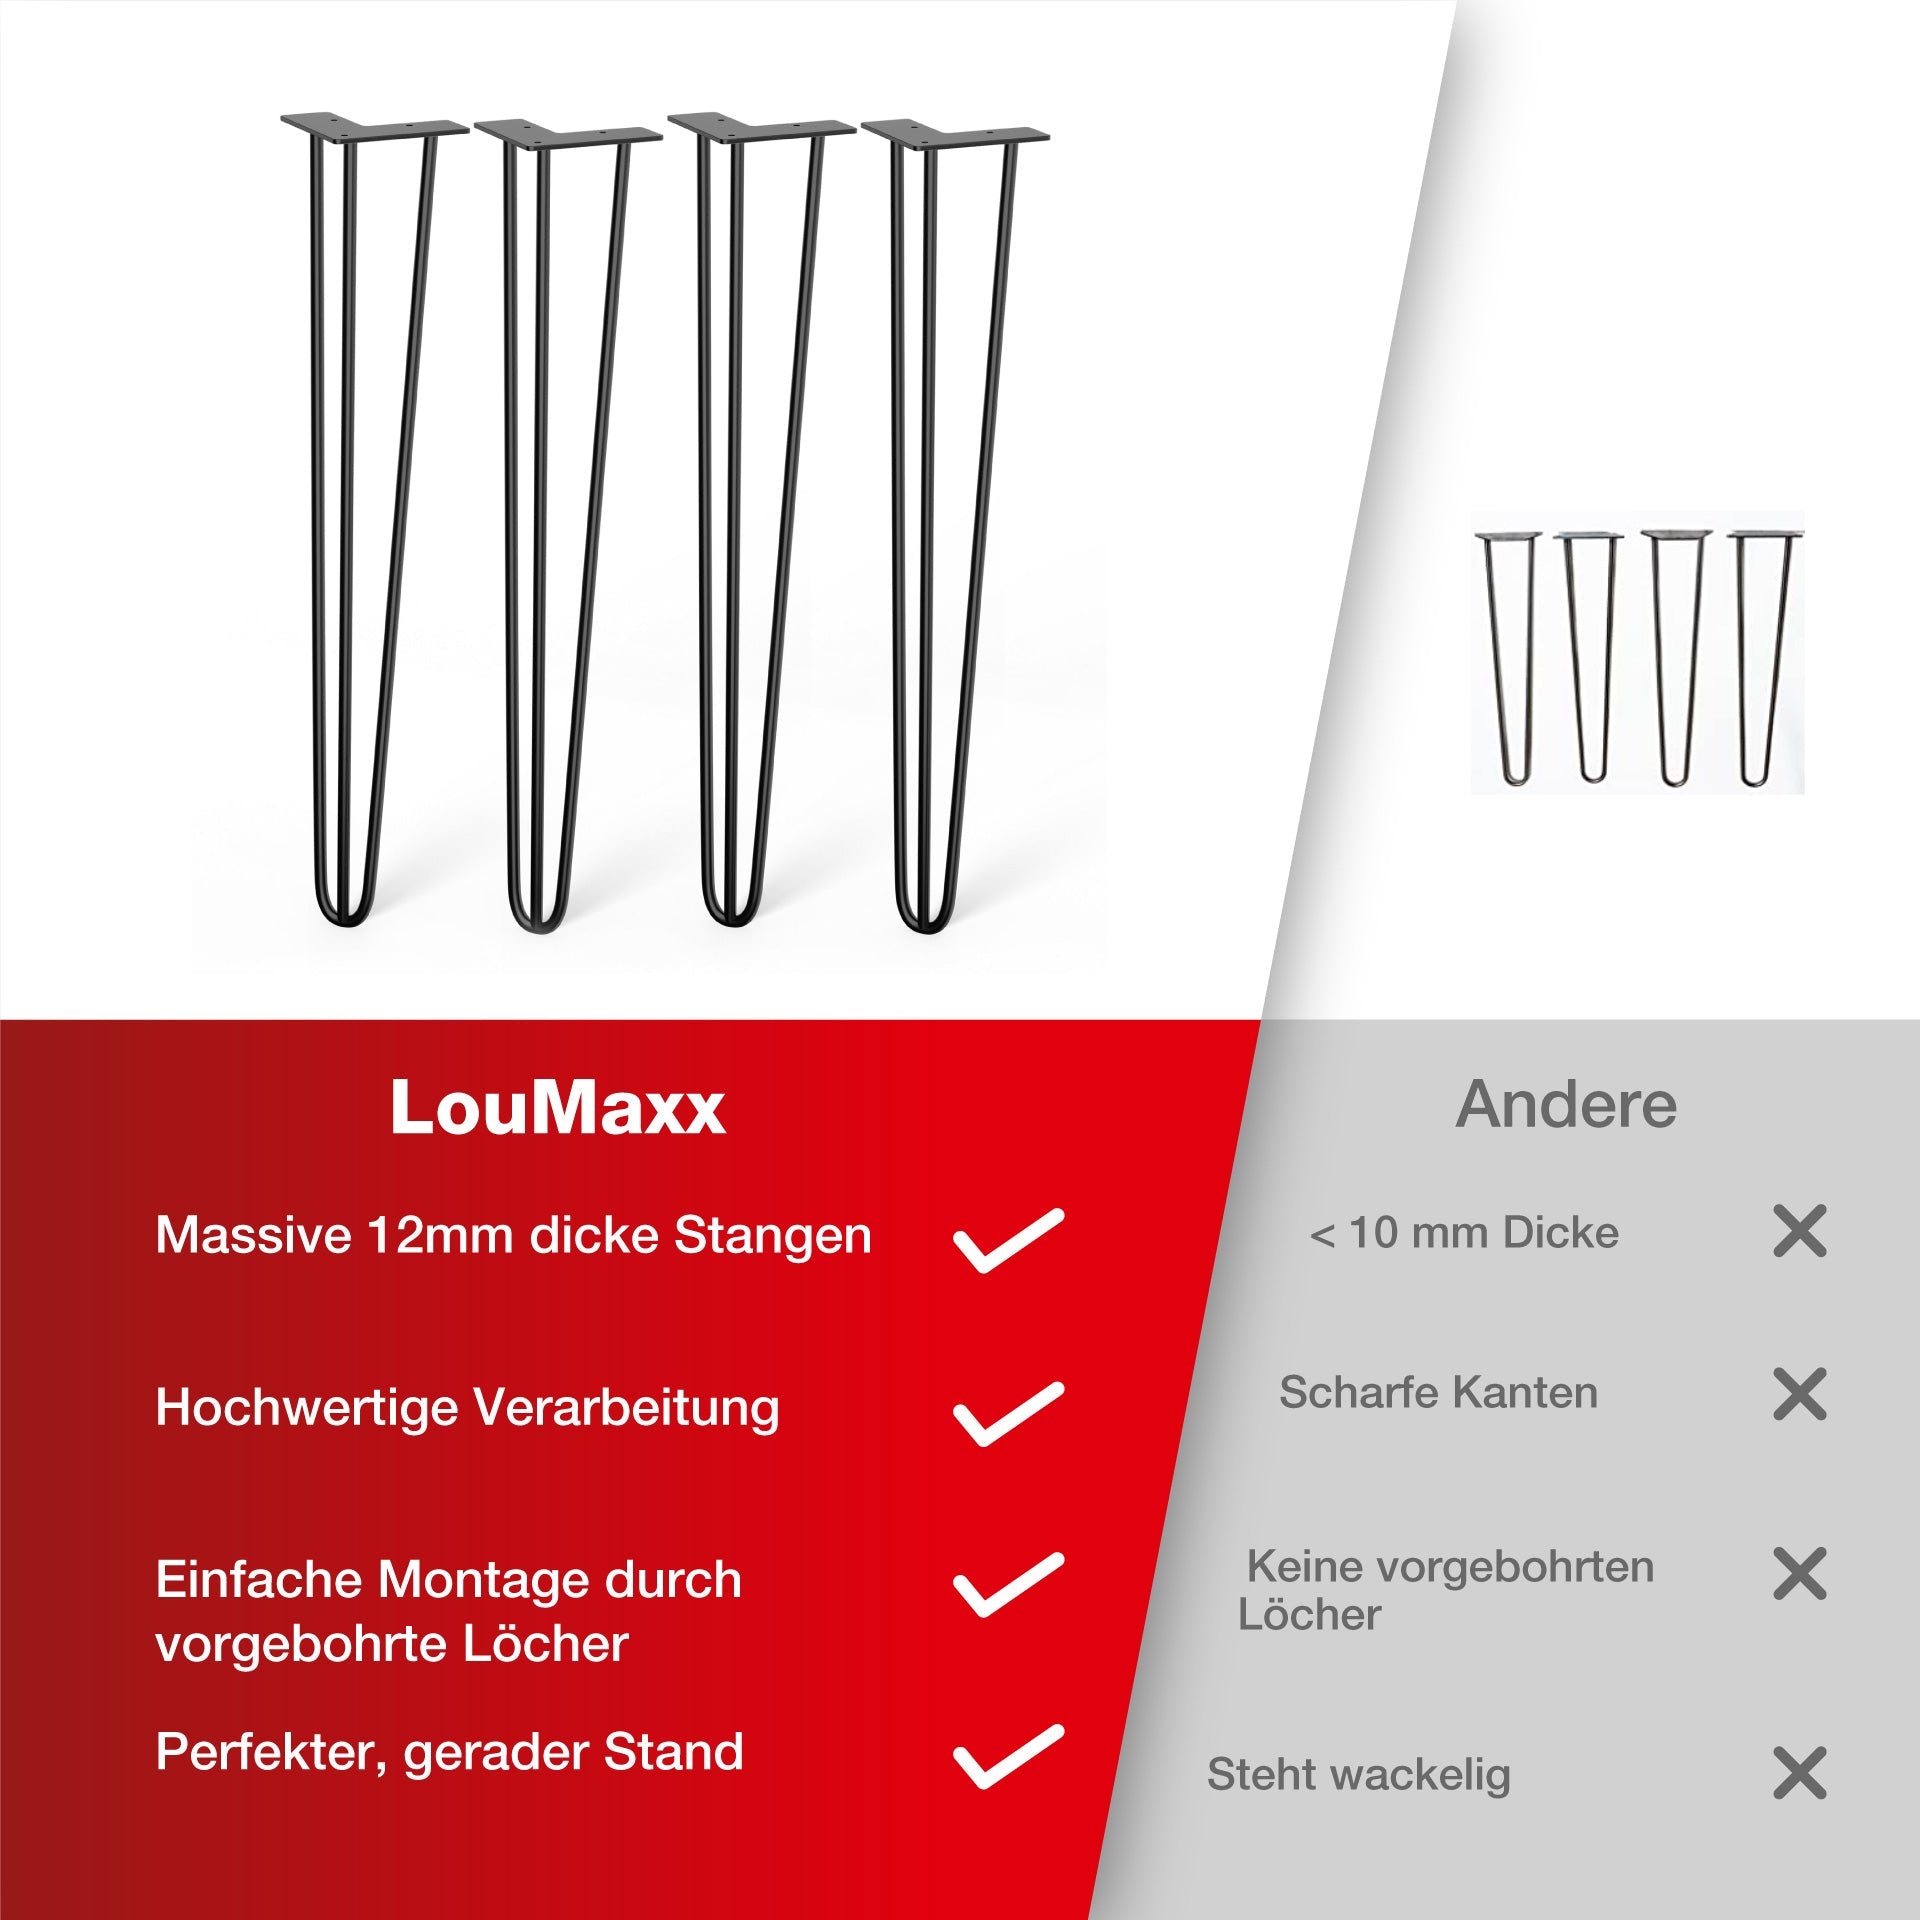 LouMaxx Tischbeine Metall Schwarz – 4 Stück – 710mm Höhe - 10mm Rundstahl, Hochwertiges 3-Stangen Tischbein für jeden Einsatzzweck  inkl. Schrauben und Bodenschoner